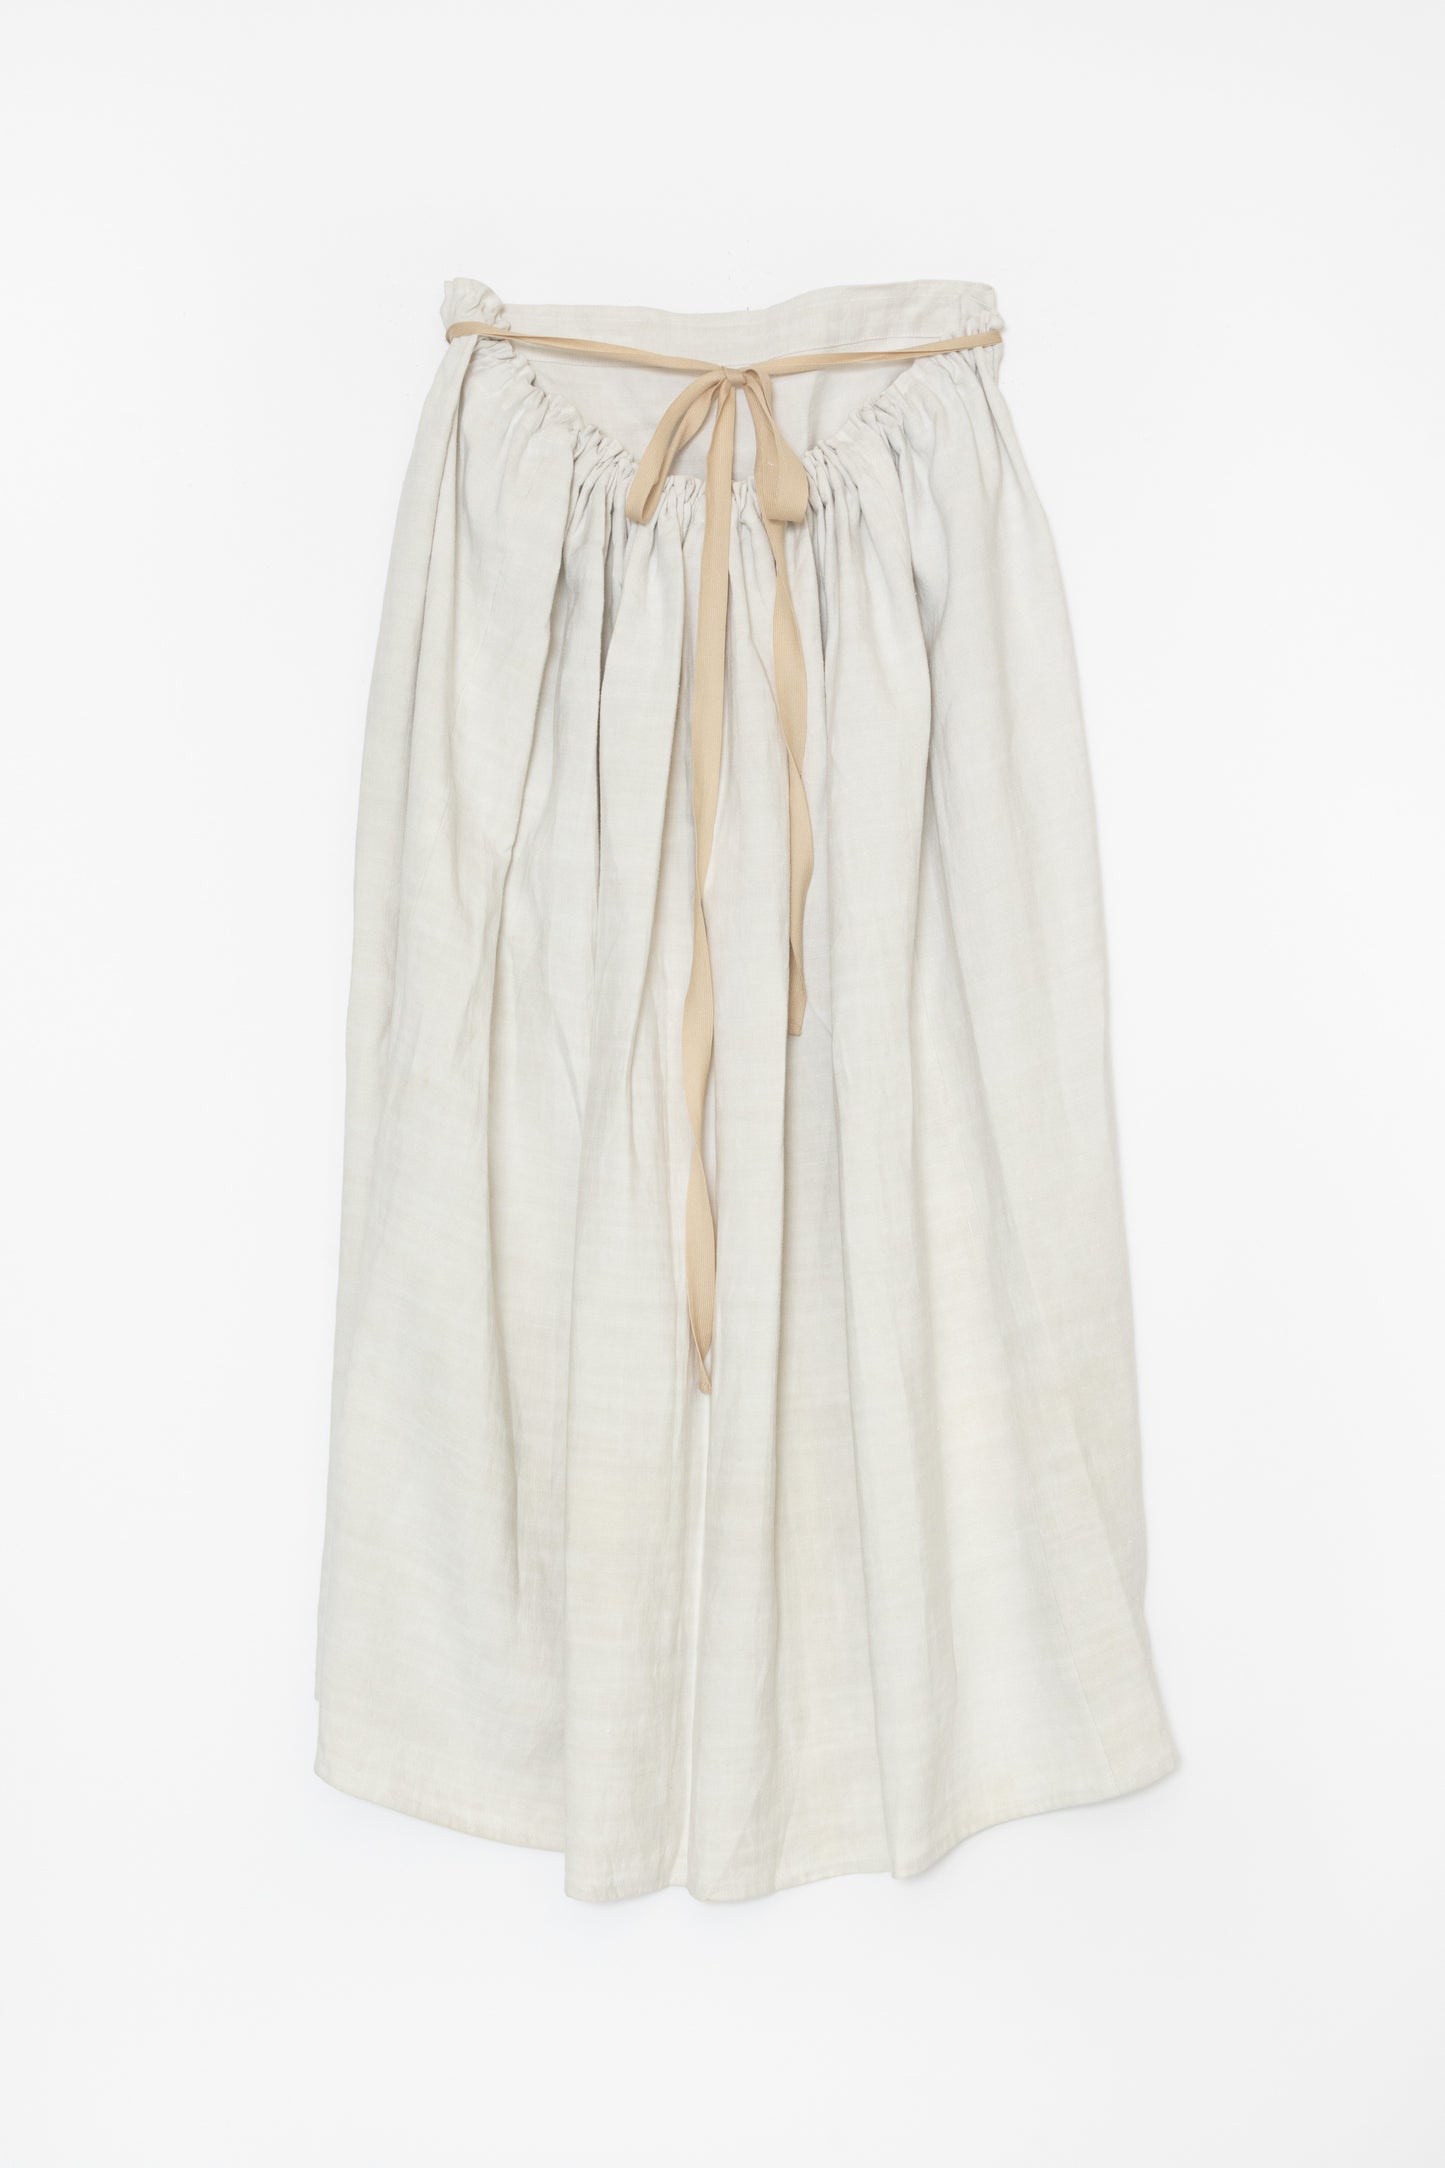 [Whiteread] Skirt 04 - Natural Linen